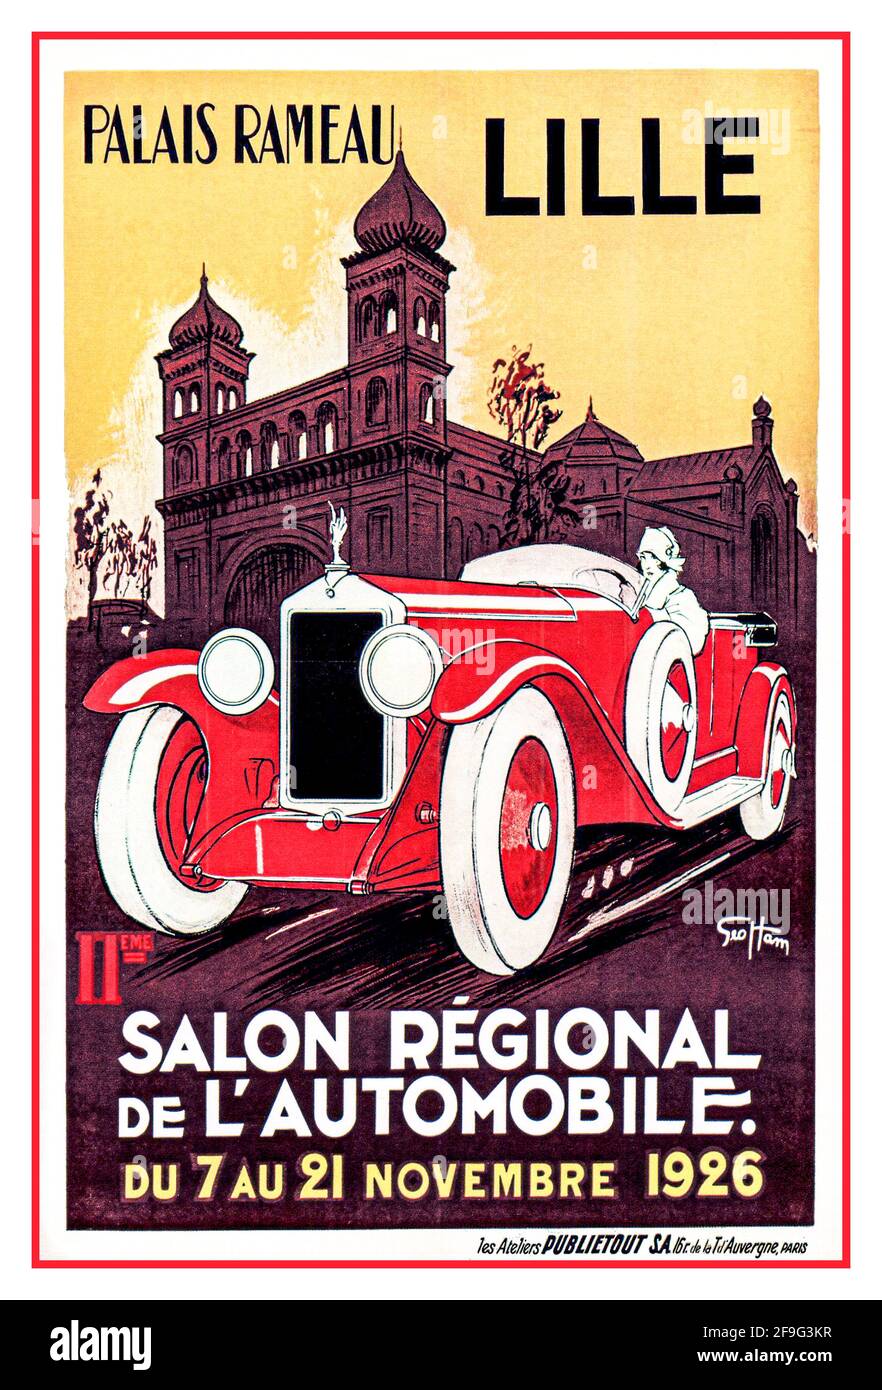 Poster d'epoca dell'automobile Palais Rameau LILLE Salon Regional de l'Automobile Du 7 au 21 Novembre 1926 Foto Stock